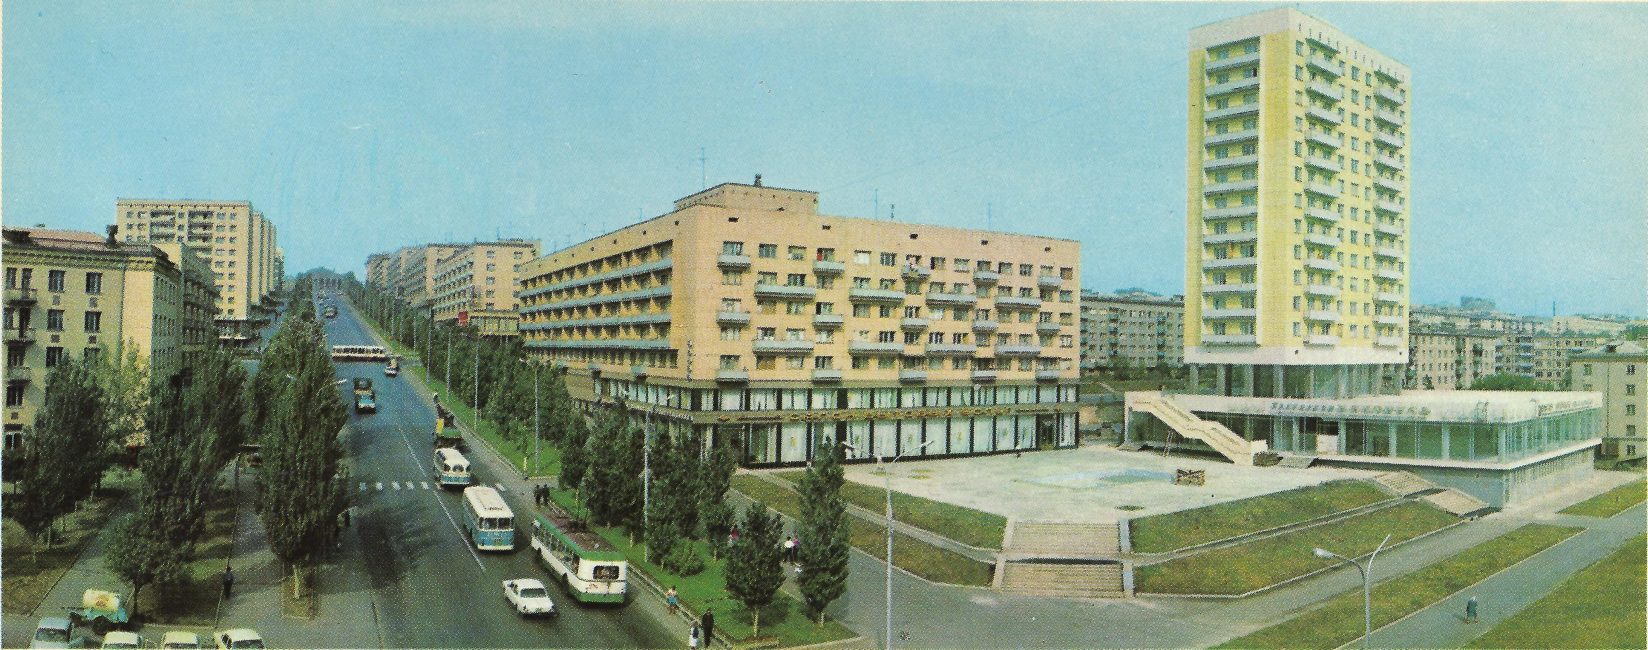 Фото: З.А.Вишневский, З.Г.Косточкина, 1973